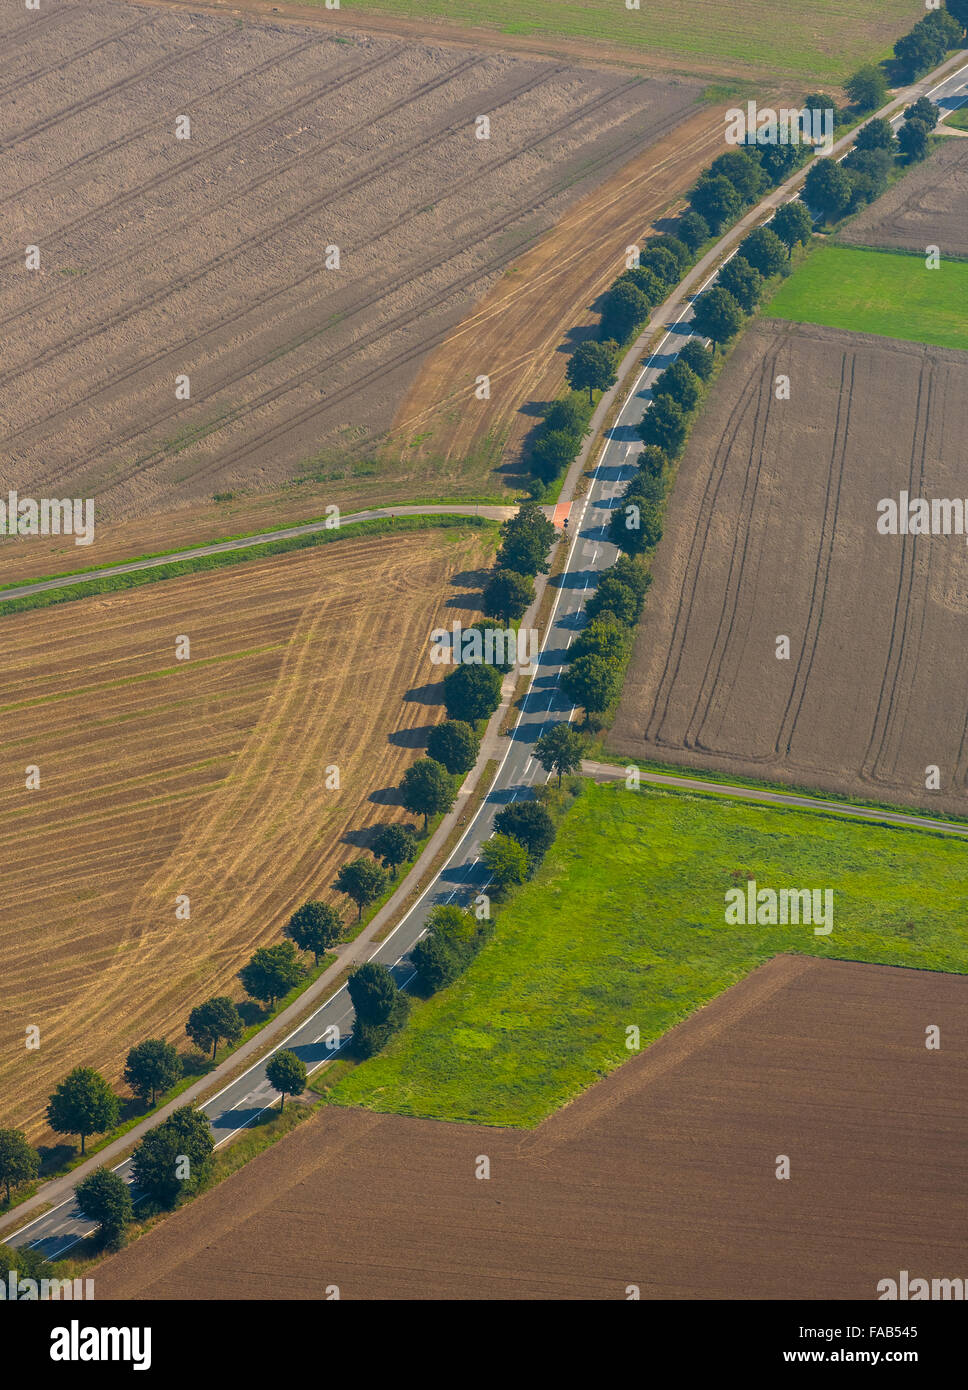 Luftaufnahme, Launcher Str, Avenue zwischen Feldern, Bünde, Ostwestfalen, Nordrhein-Westfalen, Deutschland, Europa, Luftbild, Stockfoto